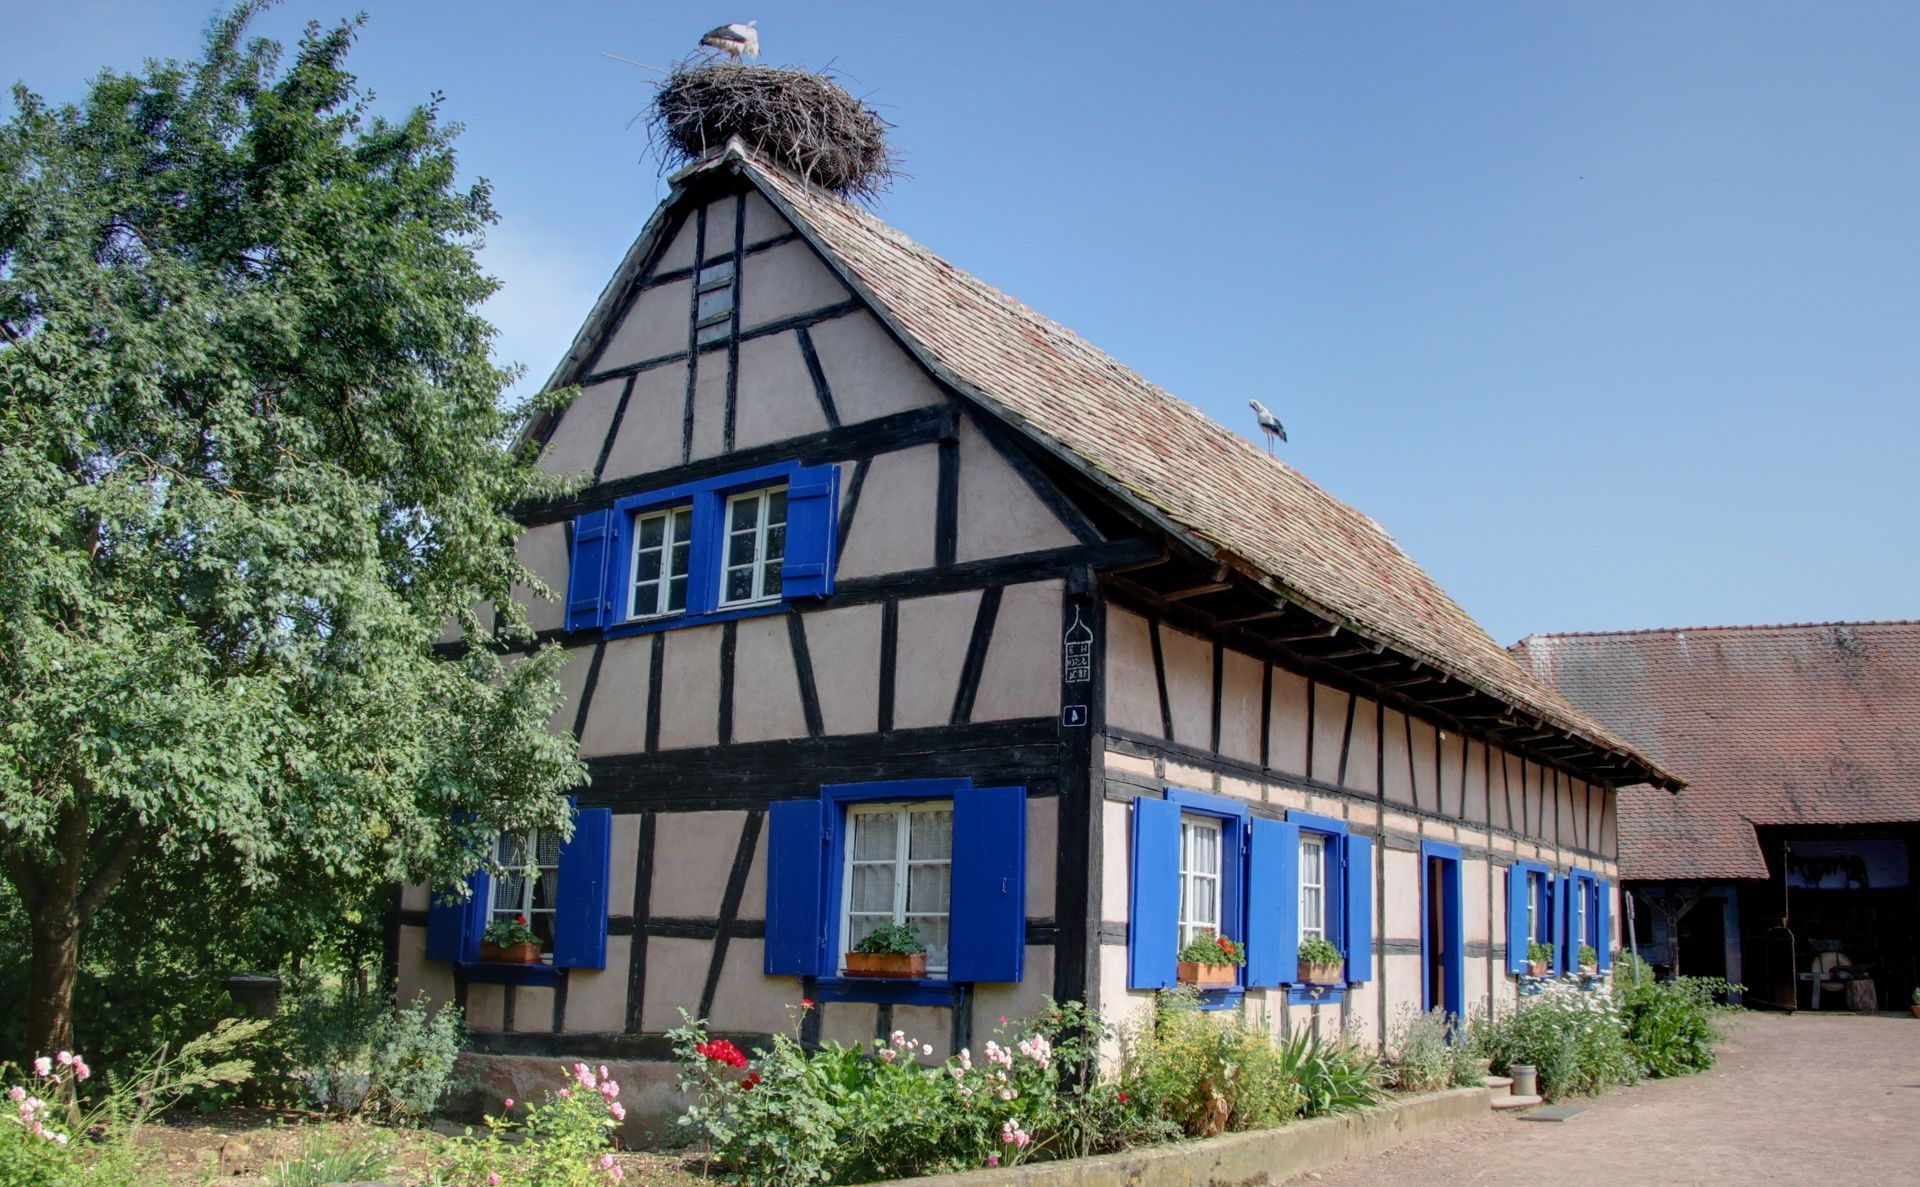 Maison typique d'Alsace